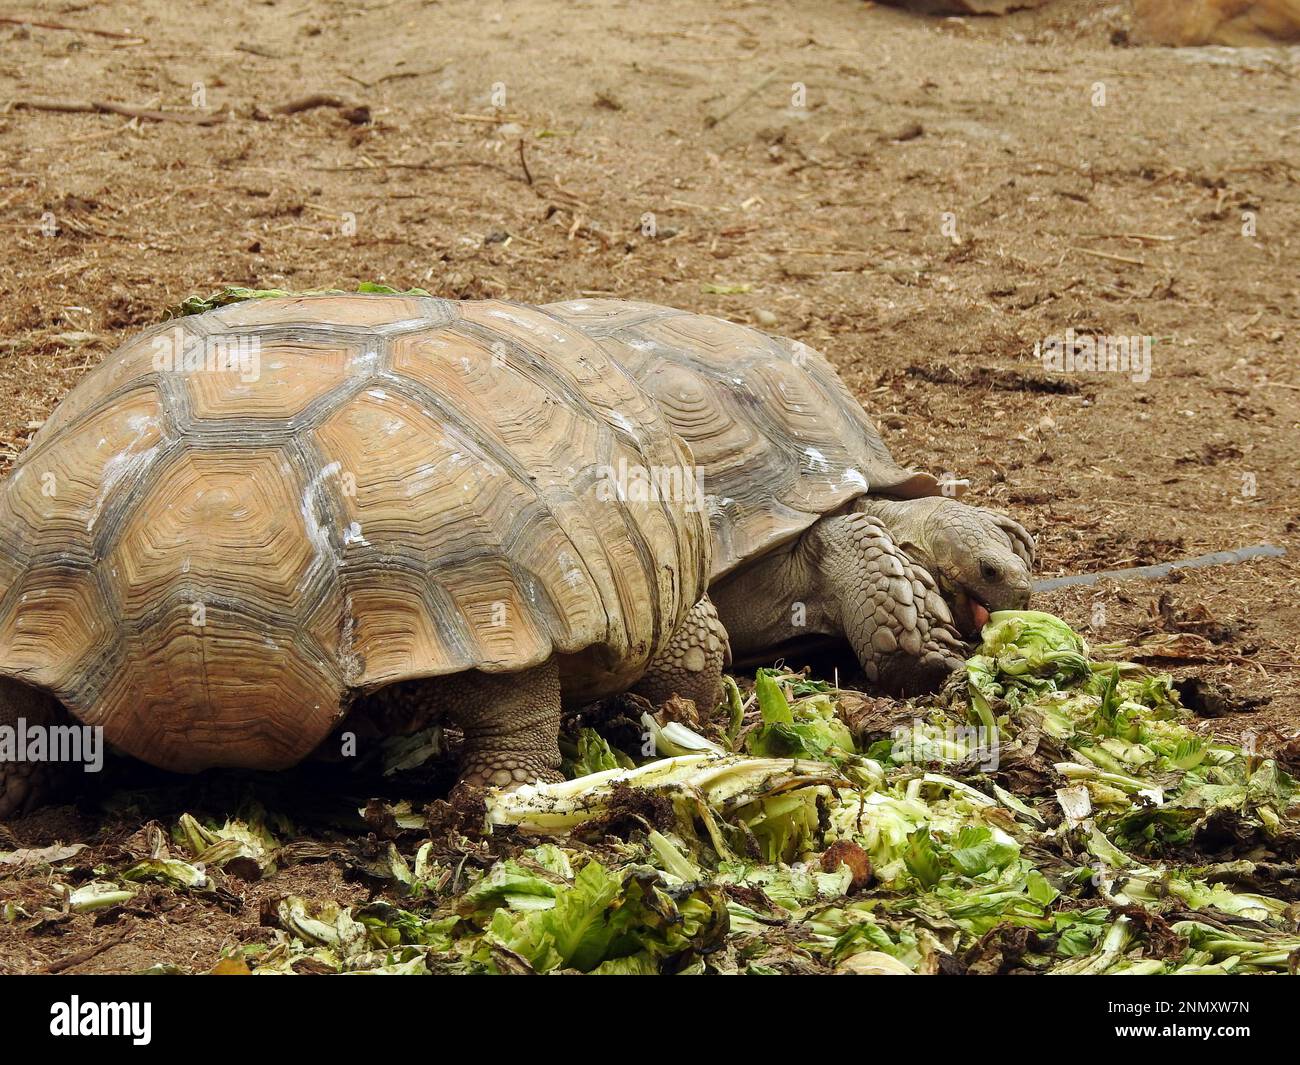 La tortue forestière asiatique (Manouria emys), également connue sous le nom de tortue montagneuse, est une espèce de tortue de la famille des Testudinidae, originaire de l'ier Banque D'Images